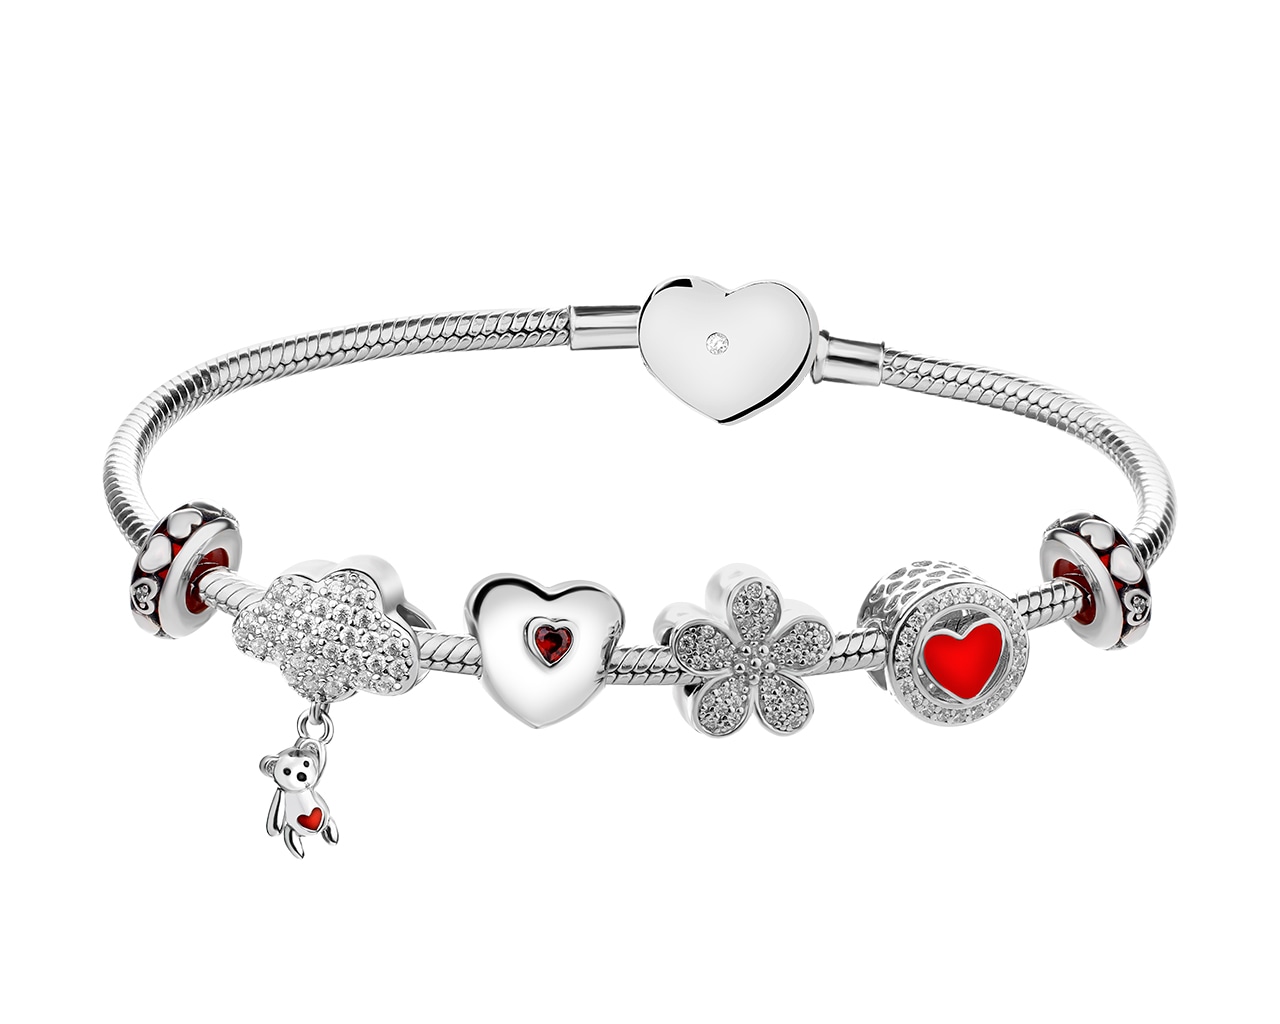 Stříbrný náramek beads - sada - medvídek, oblak, srdce, květ